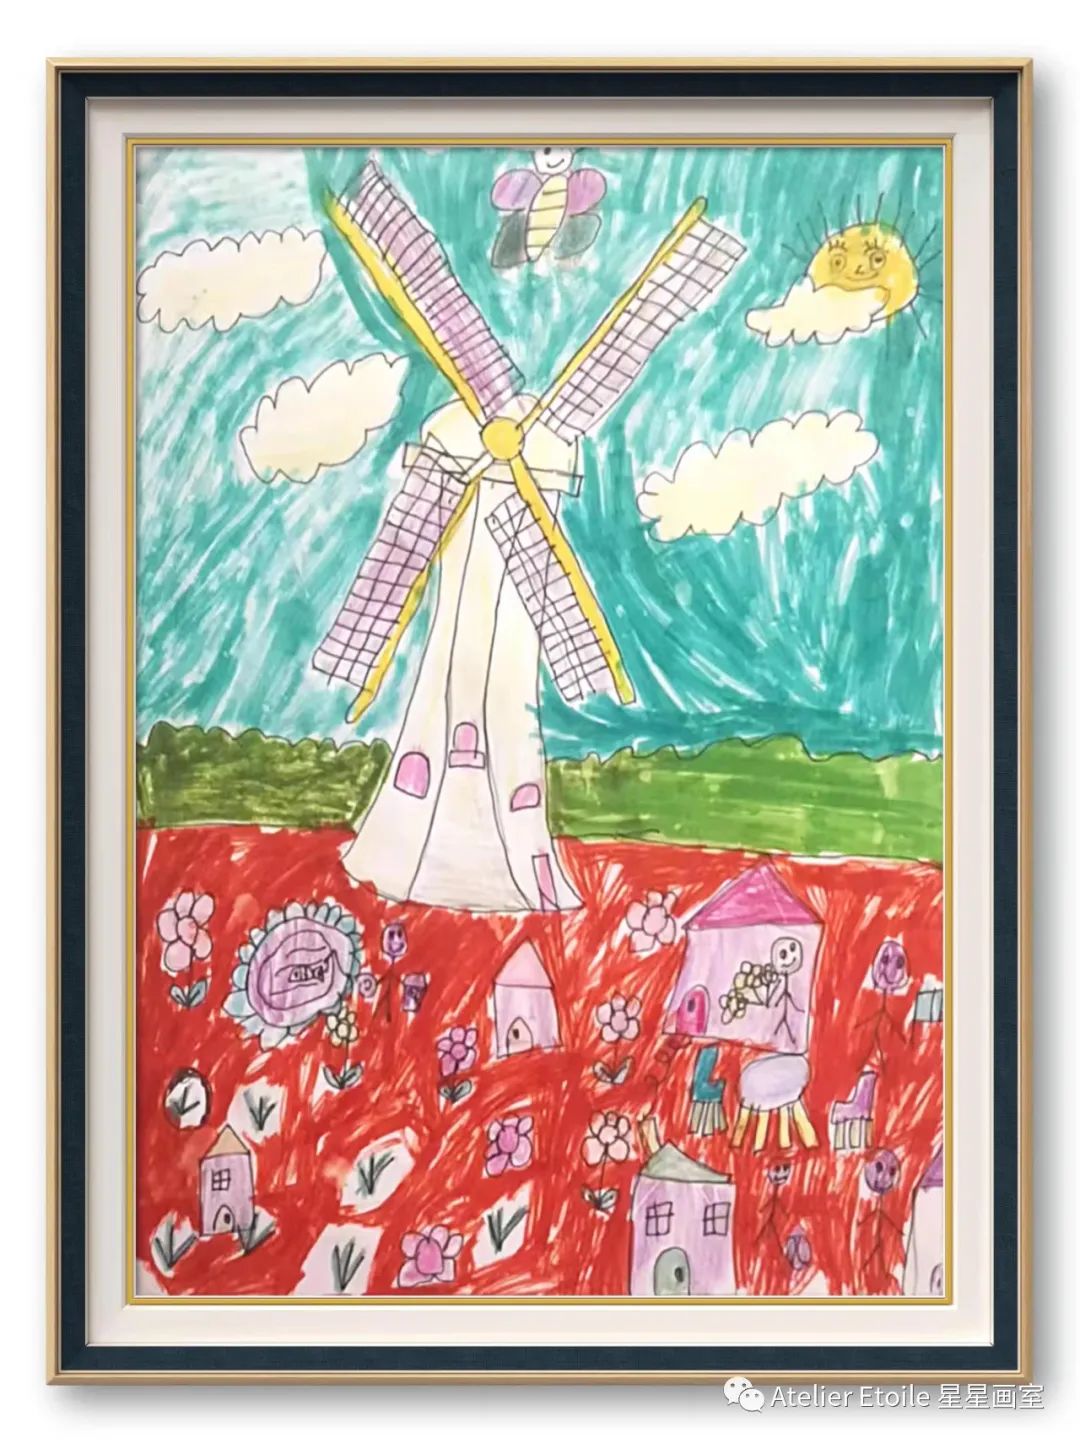 林欣悦, 7岁, 线上儿童绘画启蒙课课堂作品